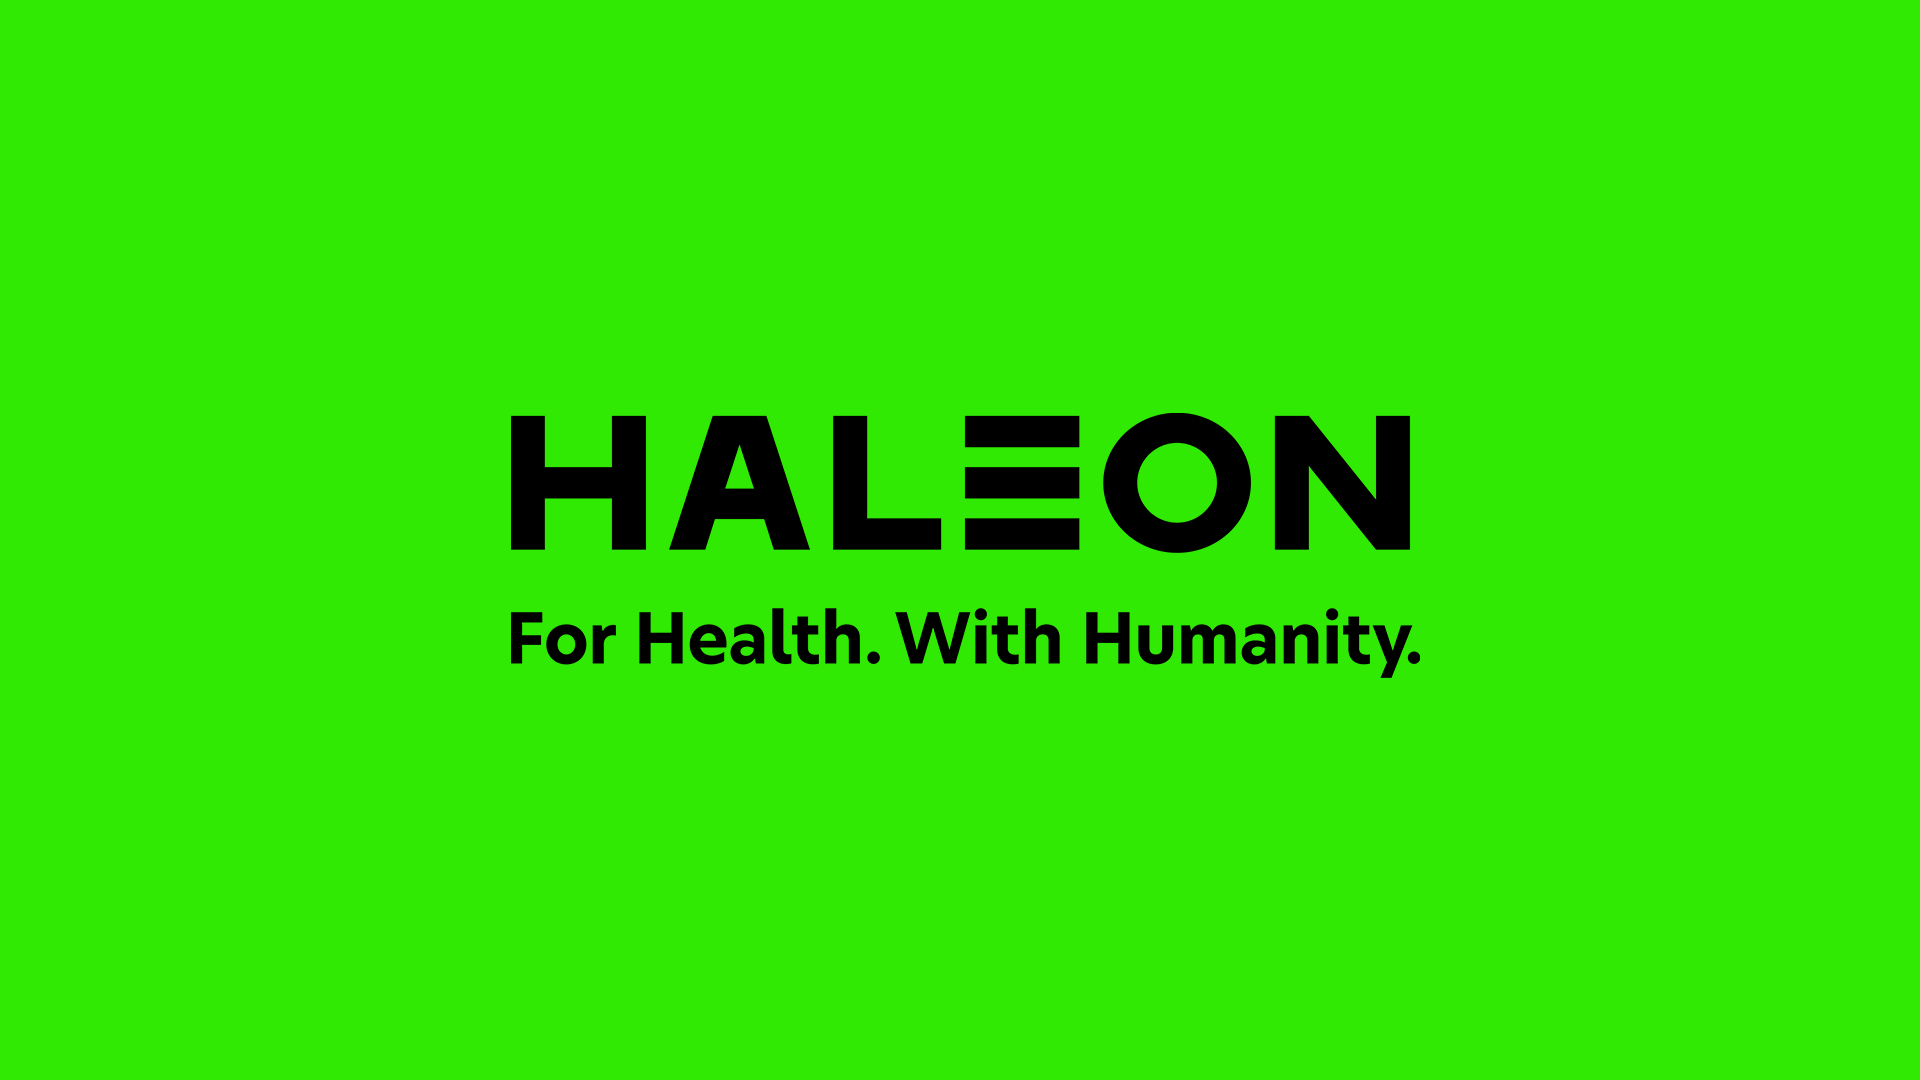 葛蘭素史克拆分消費保健業務，新公司Haleon 品牌LOGO亮相 2